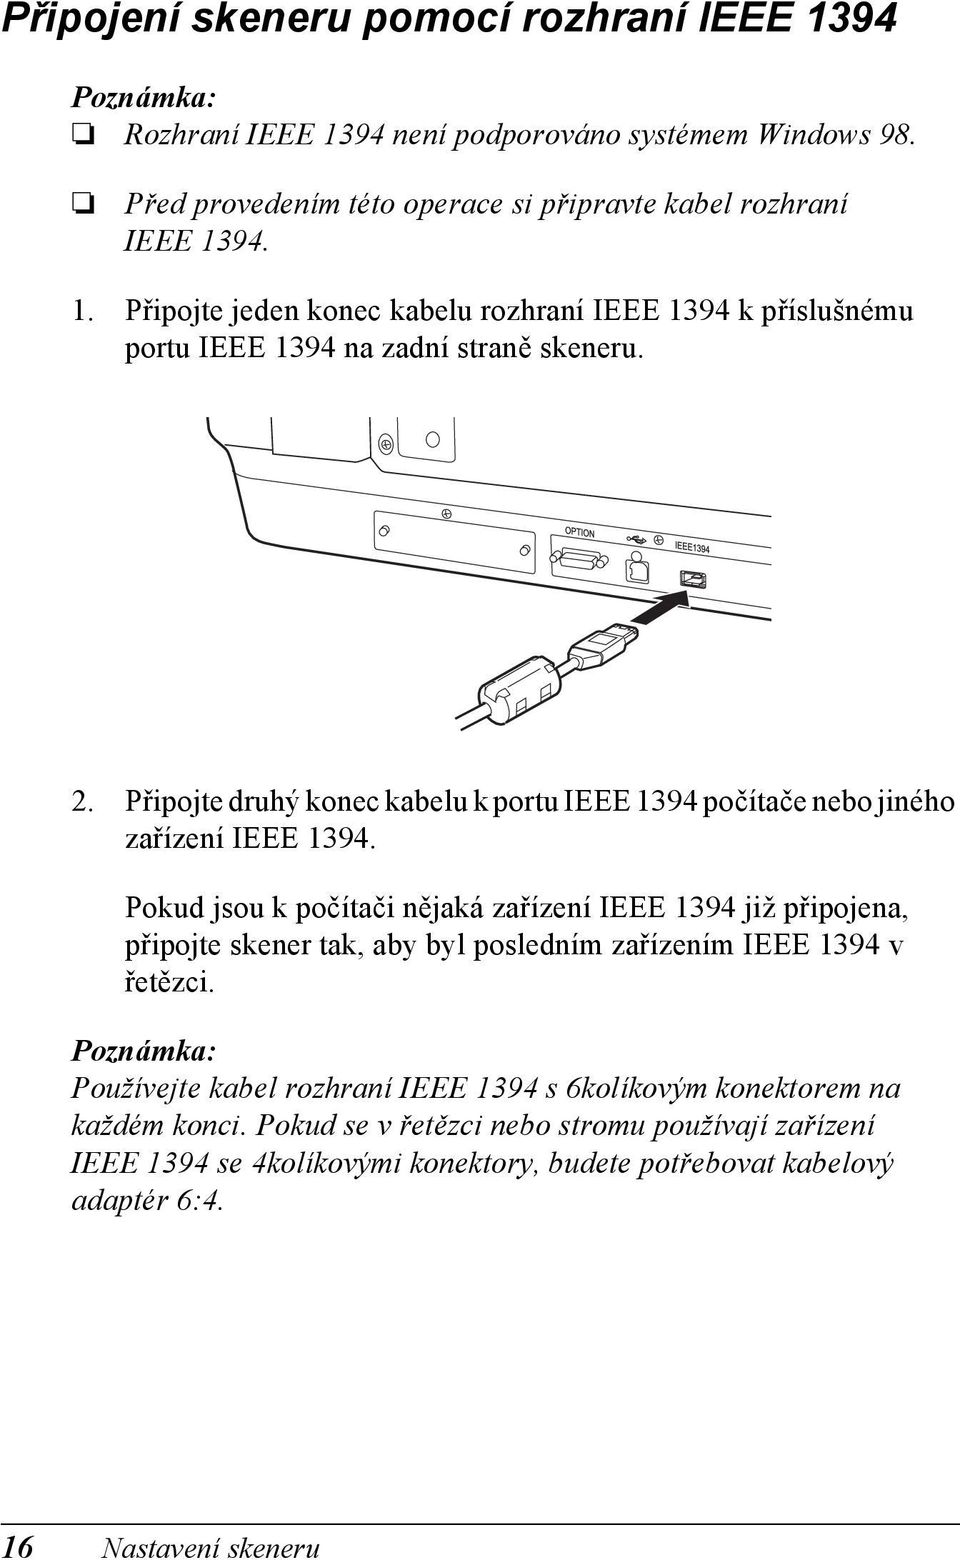 Pokud jsou k počítači nějaká zařízení IEEE 1394 již připojena, připojte skener tak, aby byl posledním zařízením IEEE 1394 v řetězci.